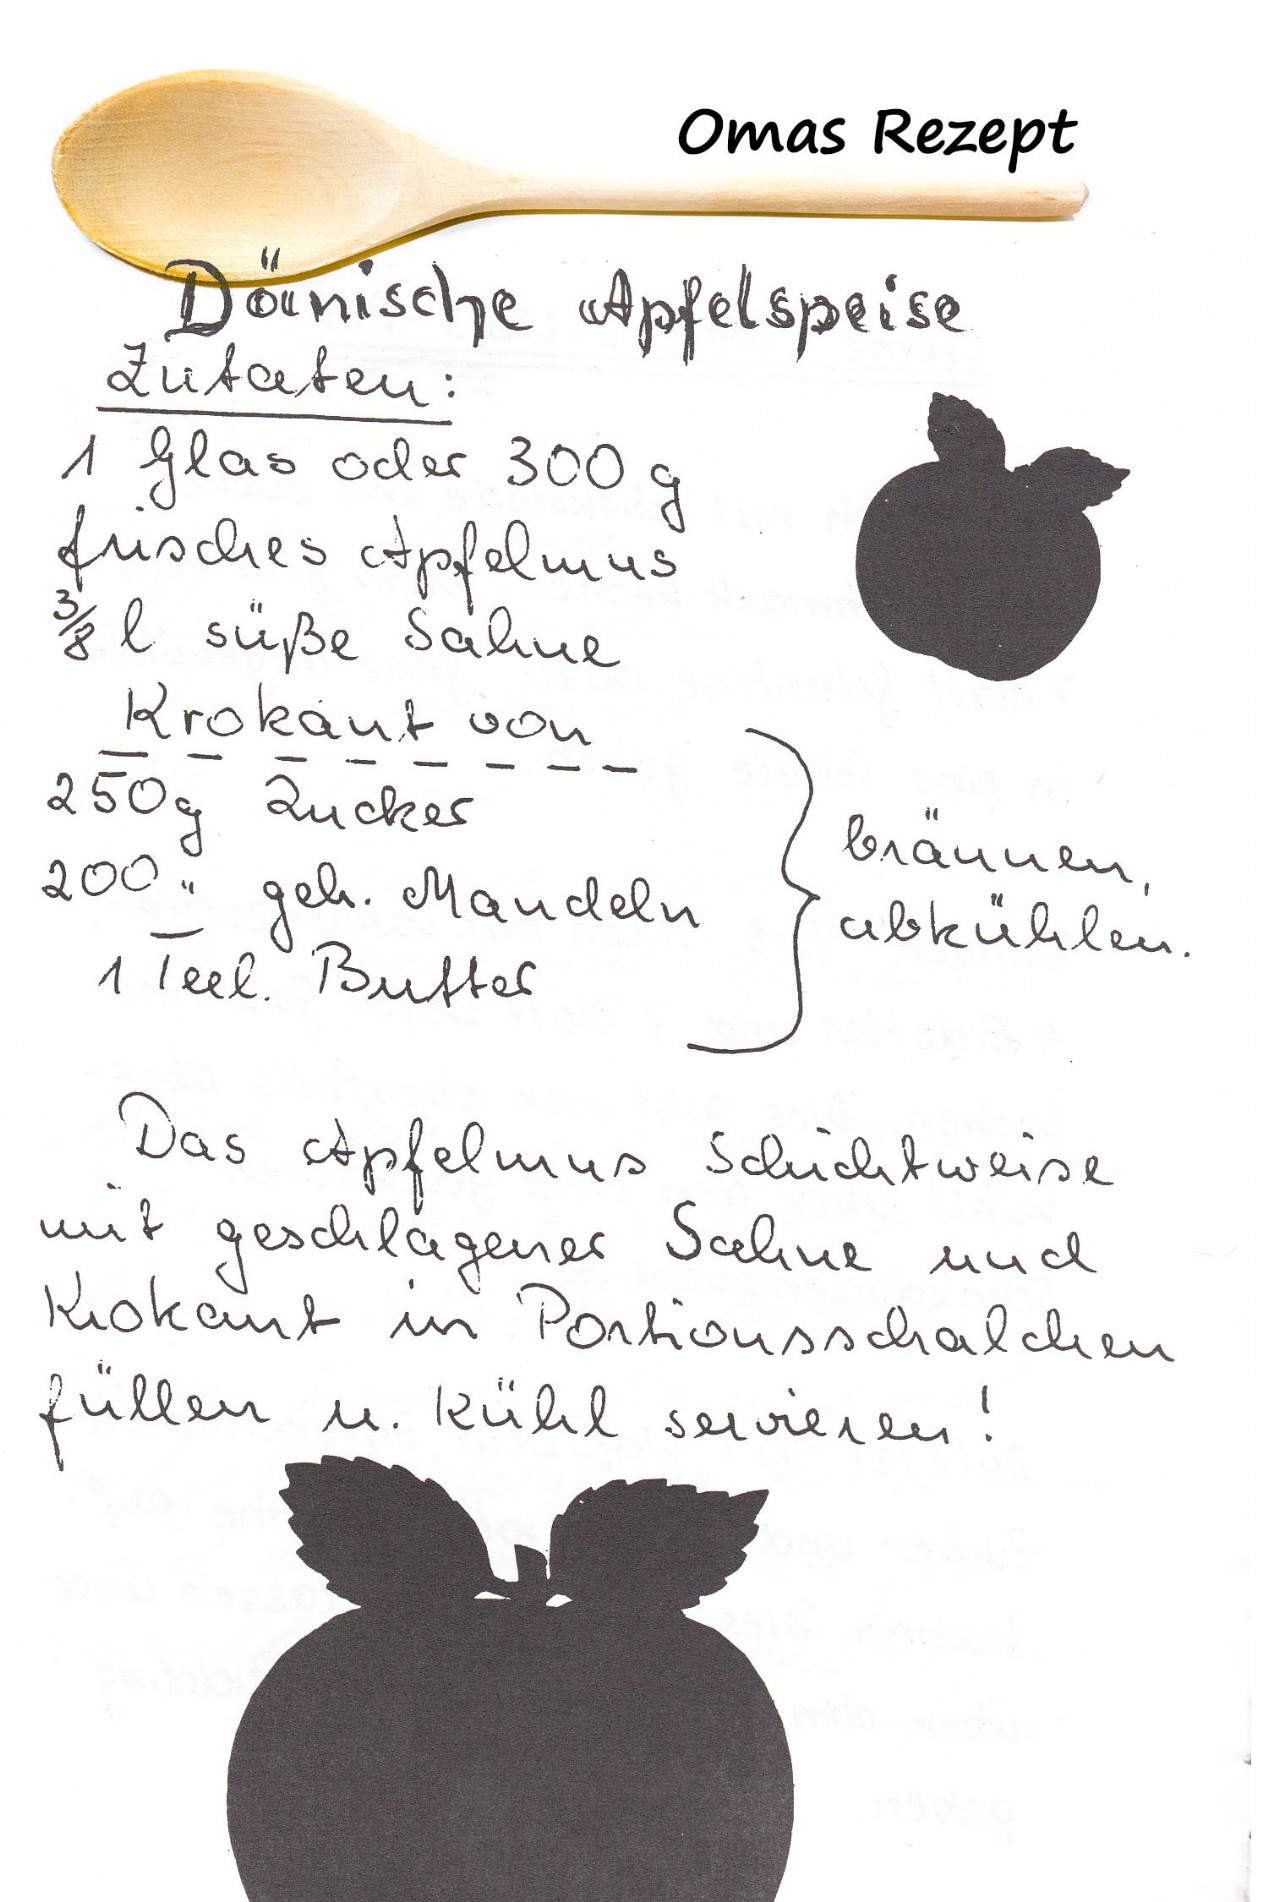 Omas Kochbuch, Desserts und Süßspeisen - Dänische Apfelspeise